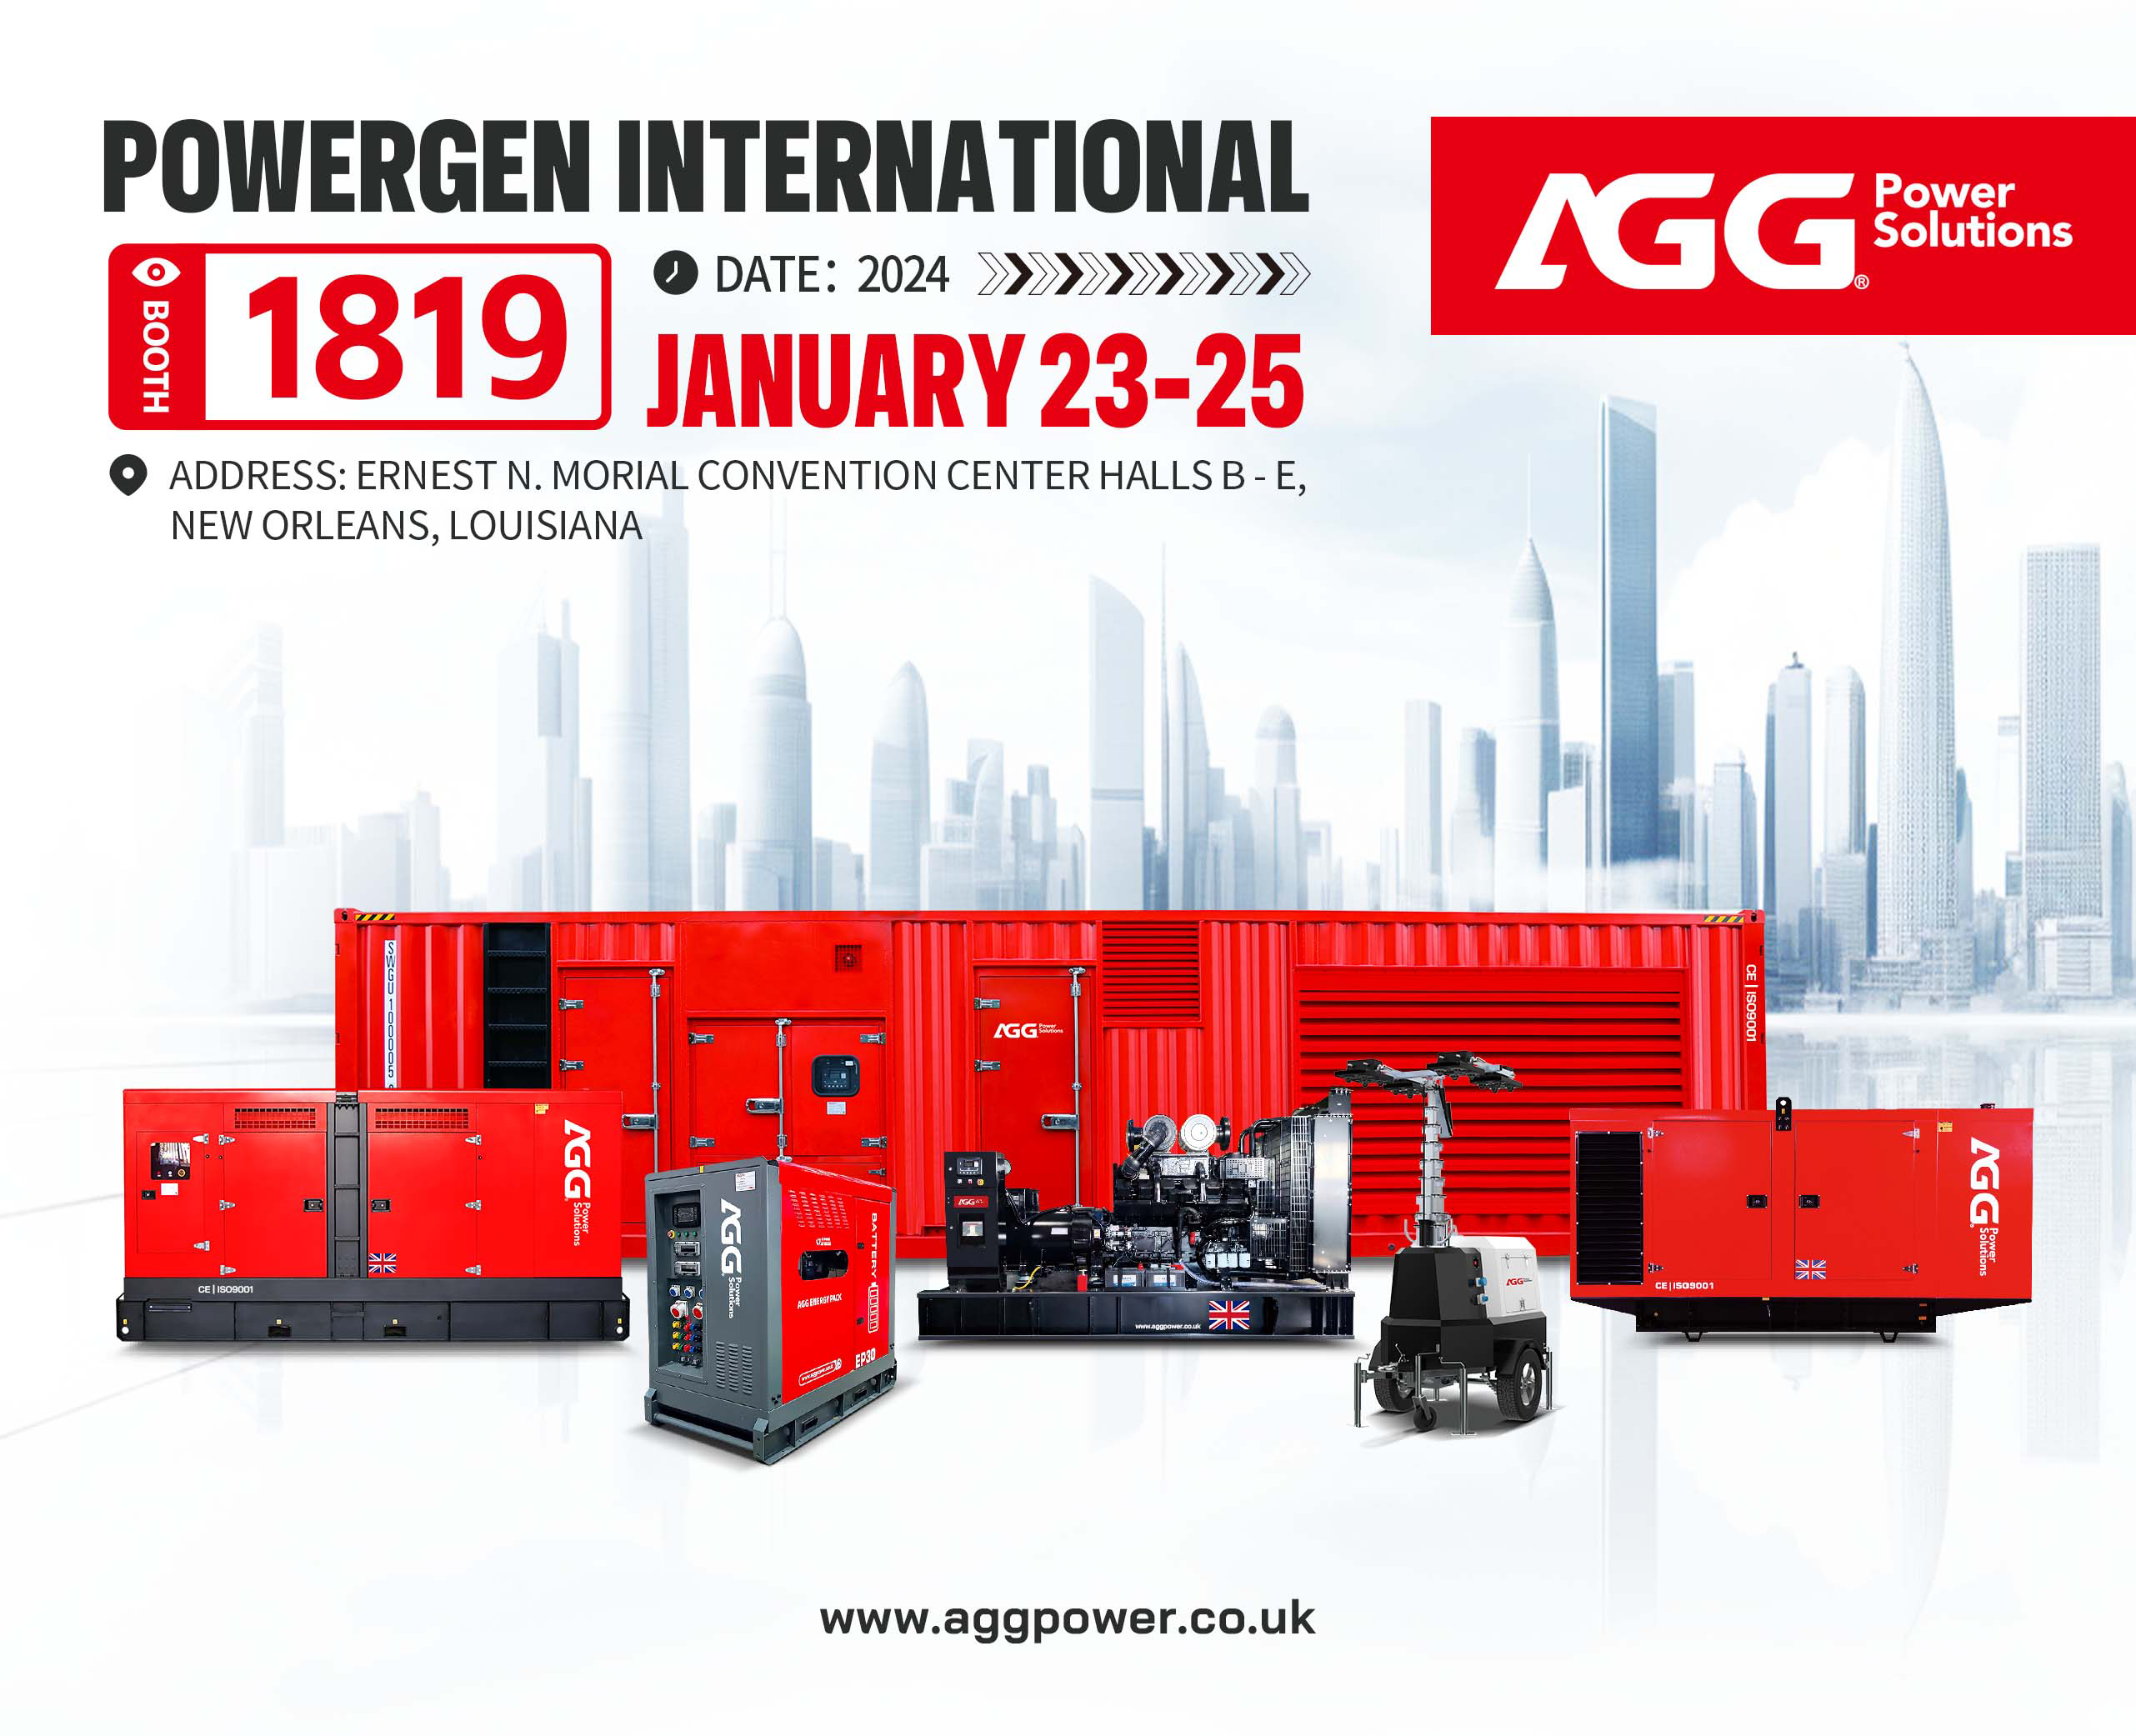 კეთილი იყოს თქვენი მობრძანება ეწვიეთ AGG-ს POWERGEN International 2024-ზე